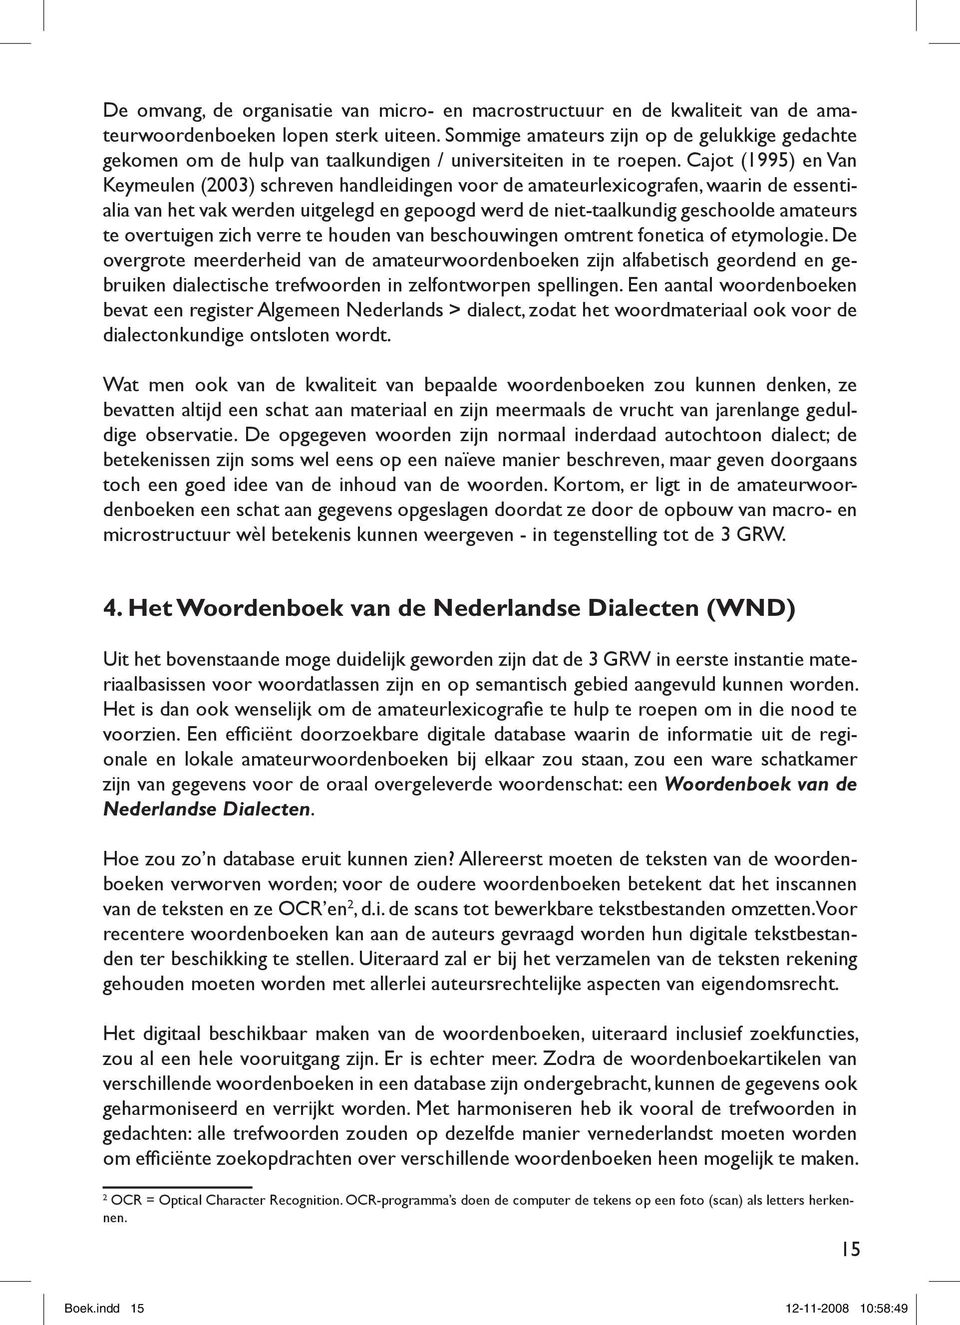 Cajot (1995) en Van Keymeulen (2003) schreven handleidingen voor de amateurlexicografen, waarin de essentialia van het vak werden uitgelegd en gepoogd werd de niet-taalkundig geschoolde amateurs te